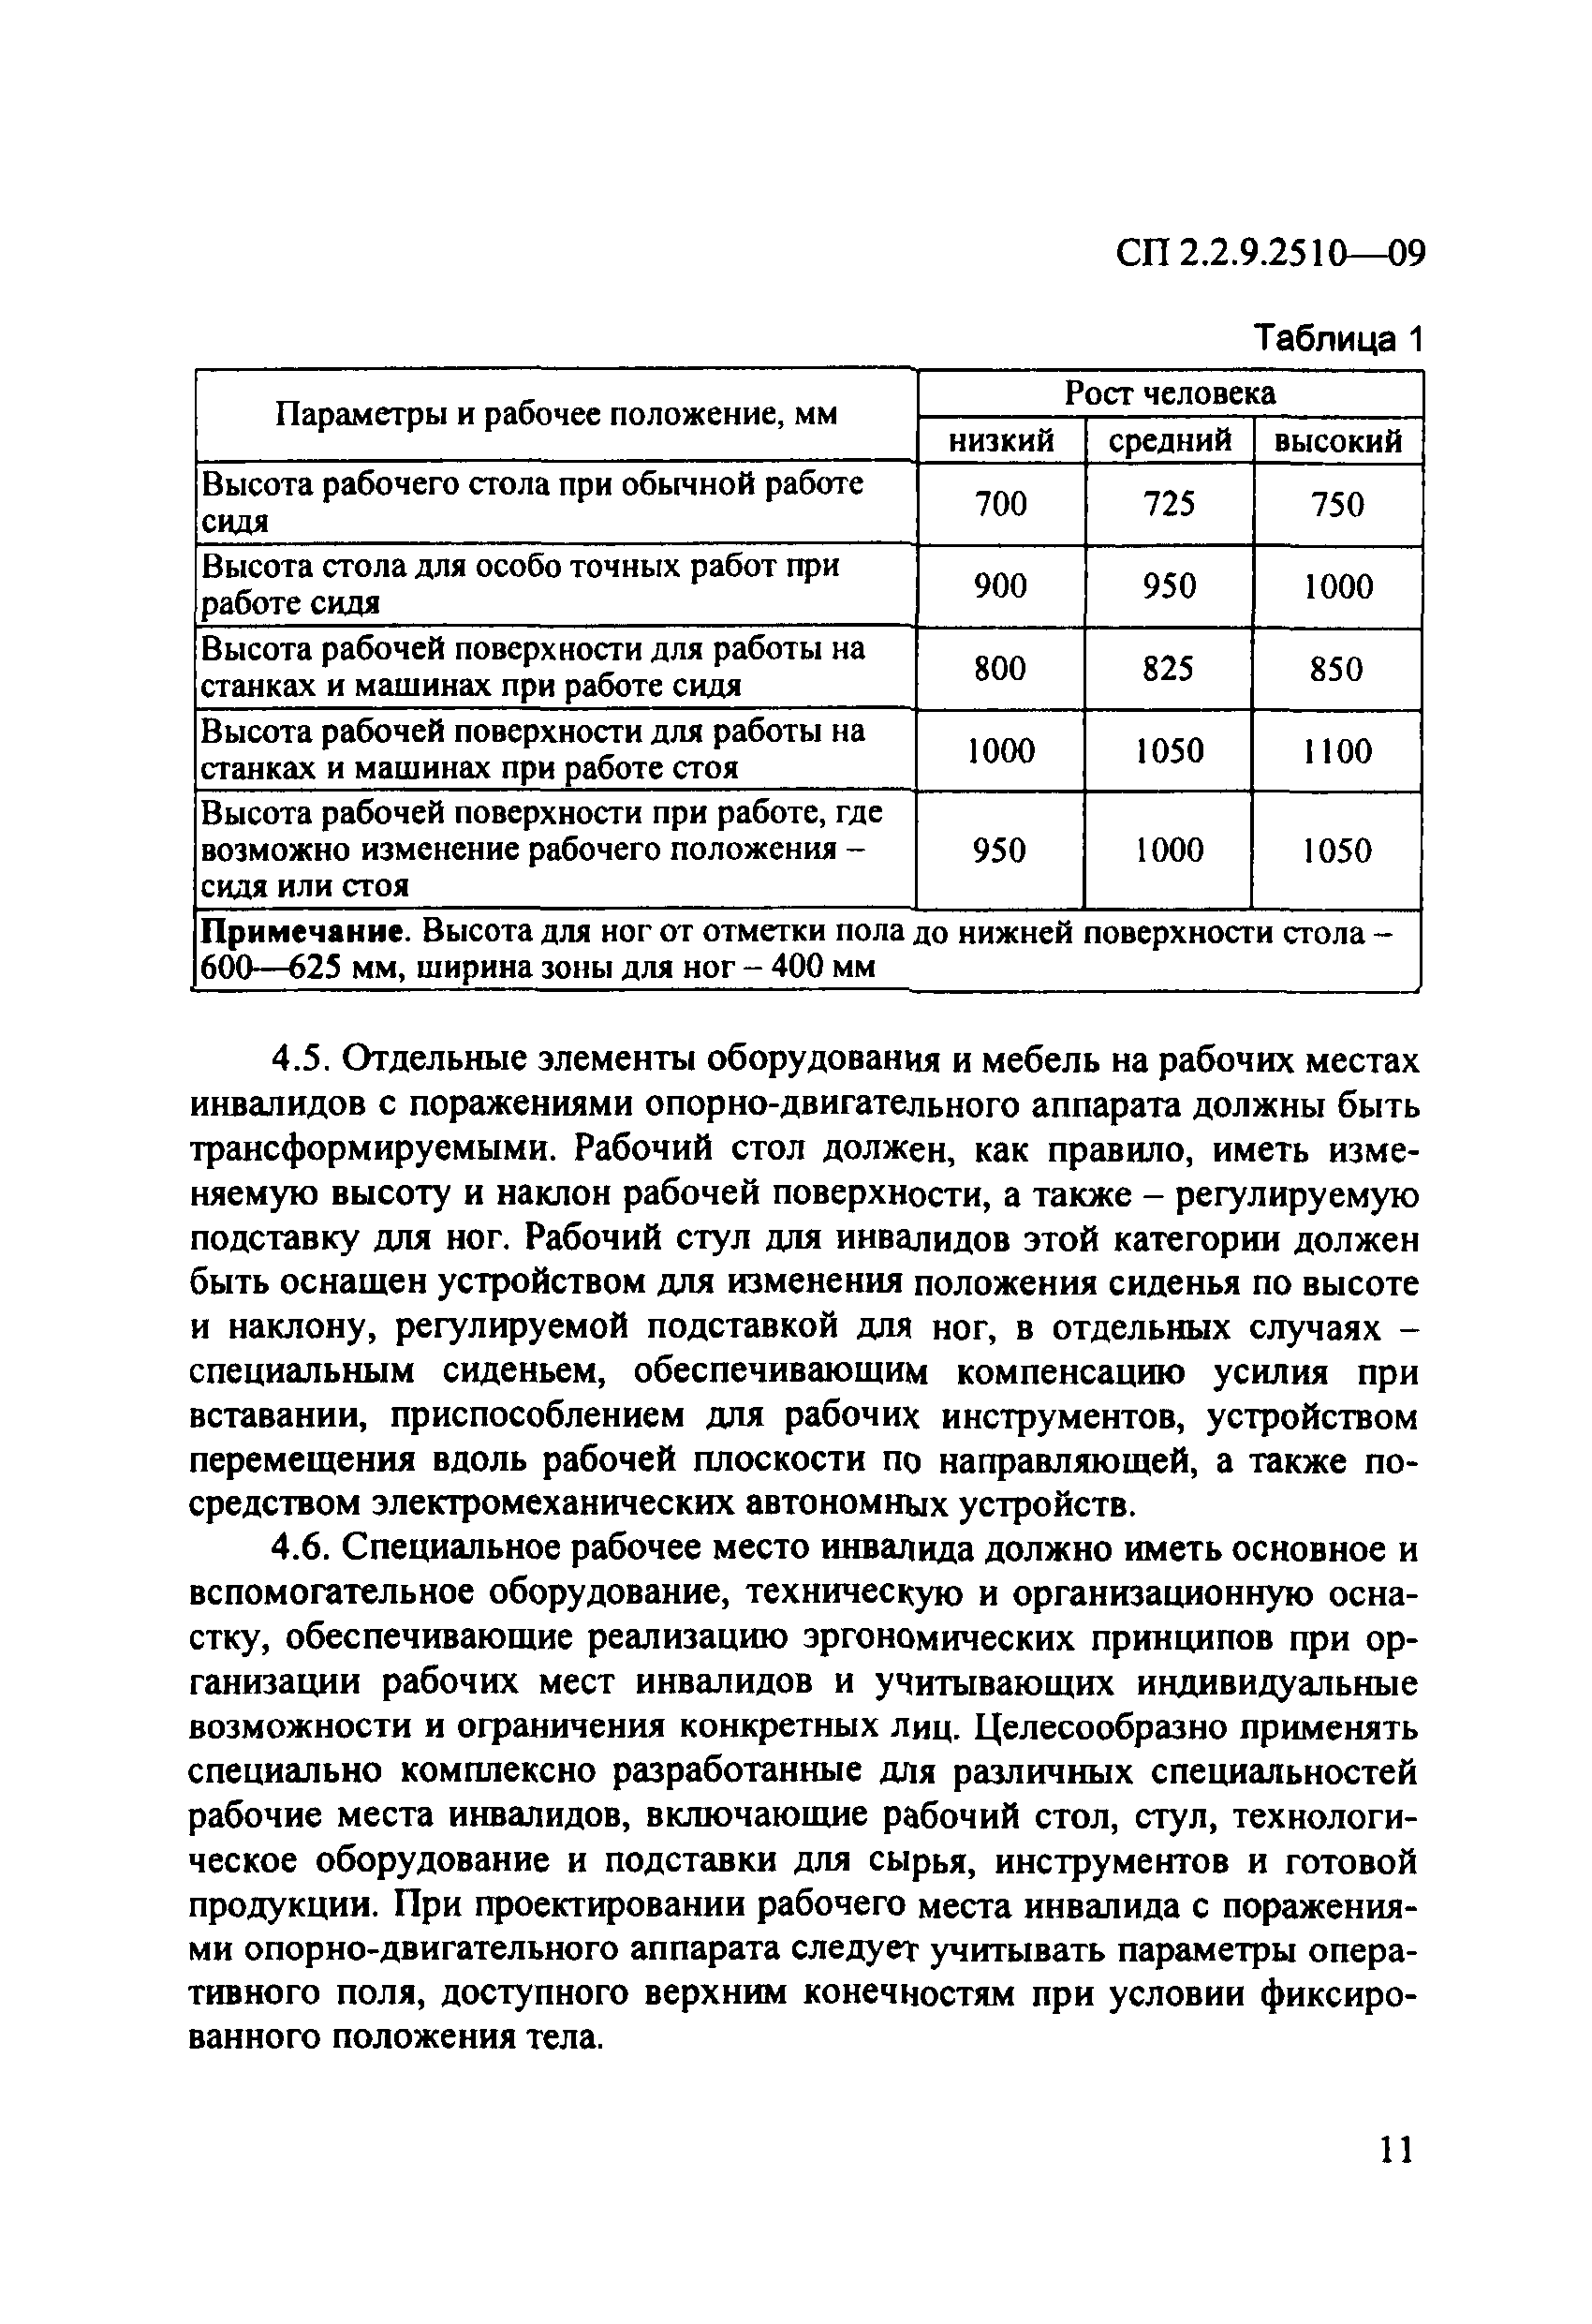 СП 2.2.9.2510-09